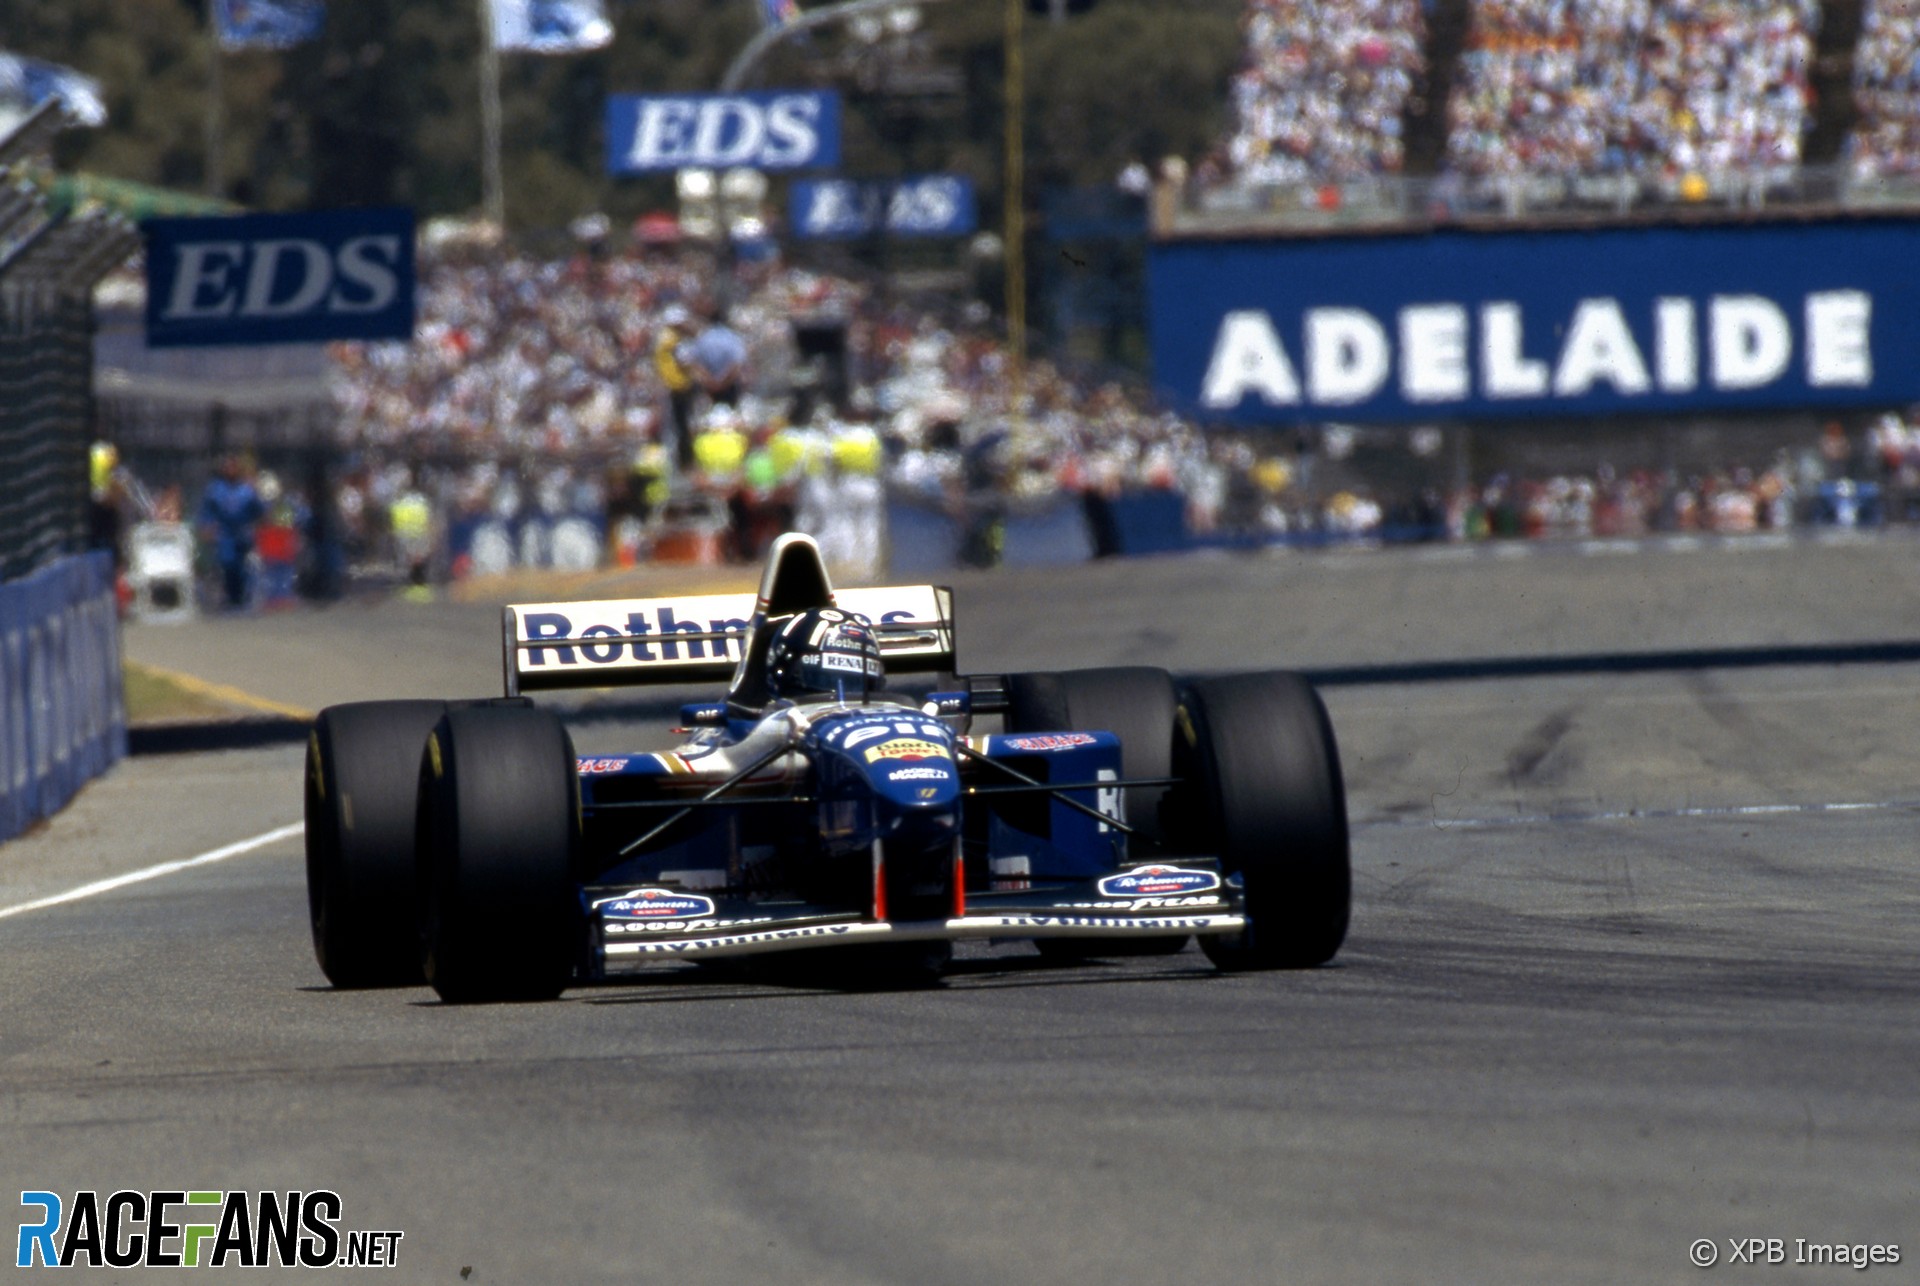 Mobil F1 tiga tempat duduk Arrows akan melaju di Adelaide di bekas tempat grand prix · RaceFans